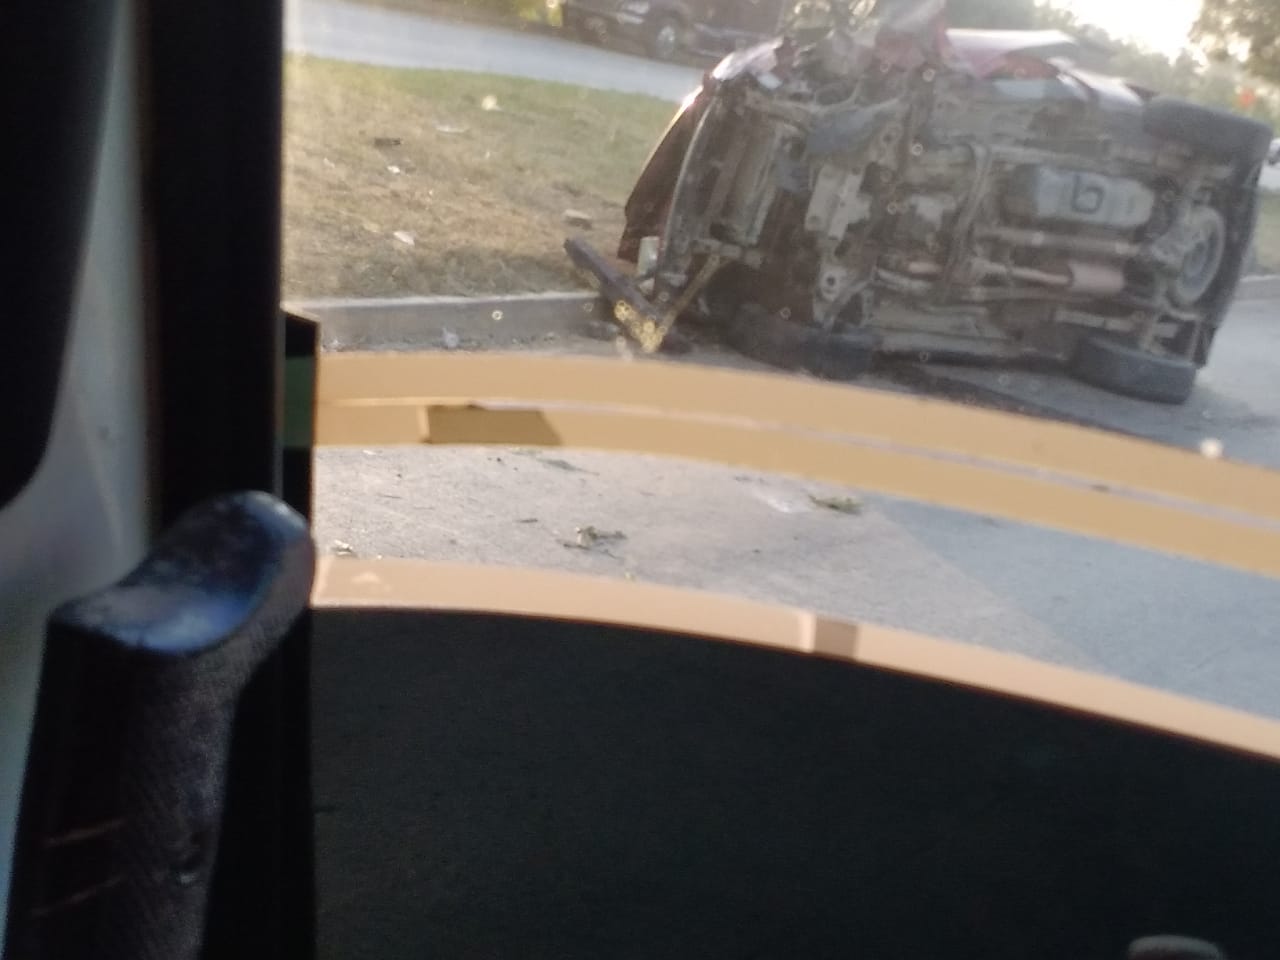 Un conductor que iba transitando por la zona evidenció en una fotografía el accidente.